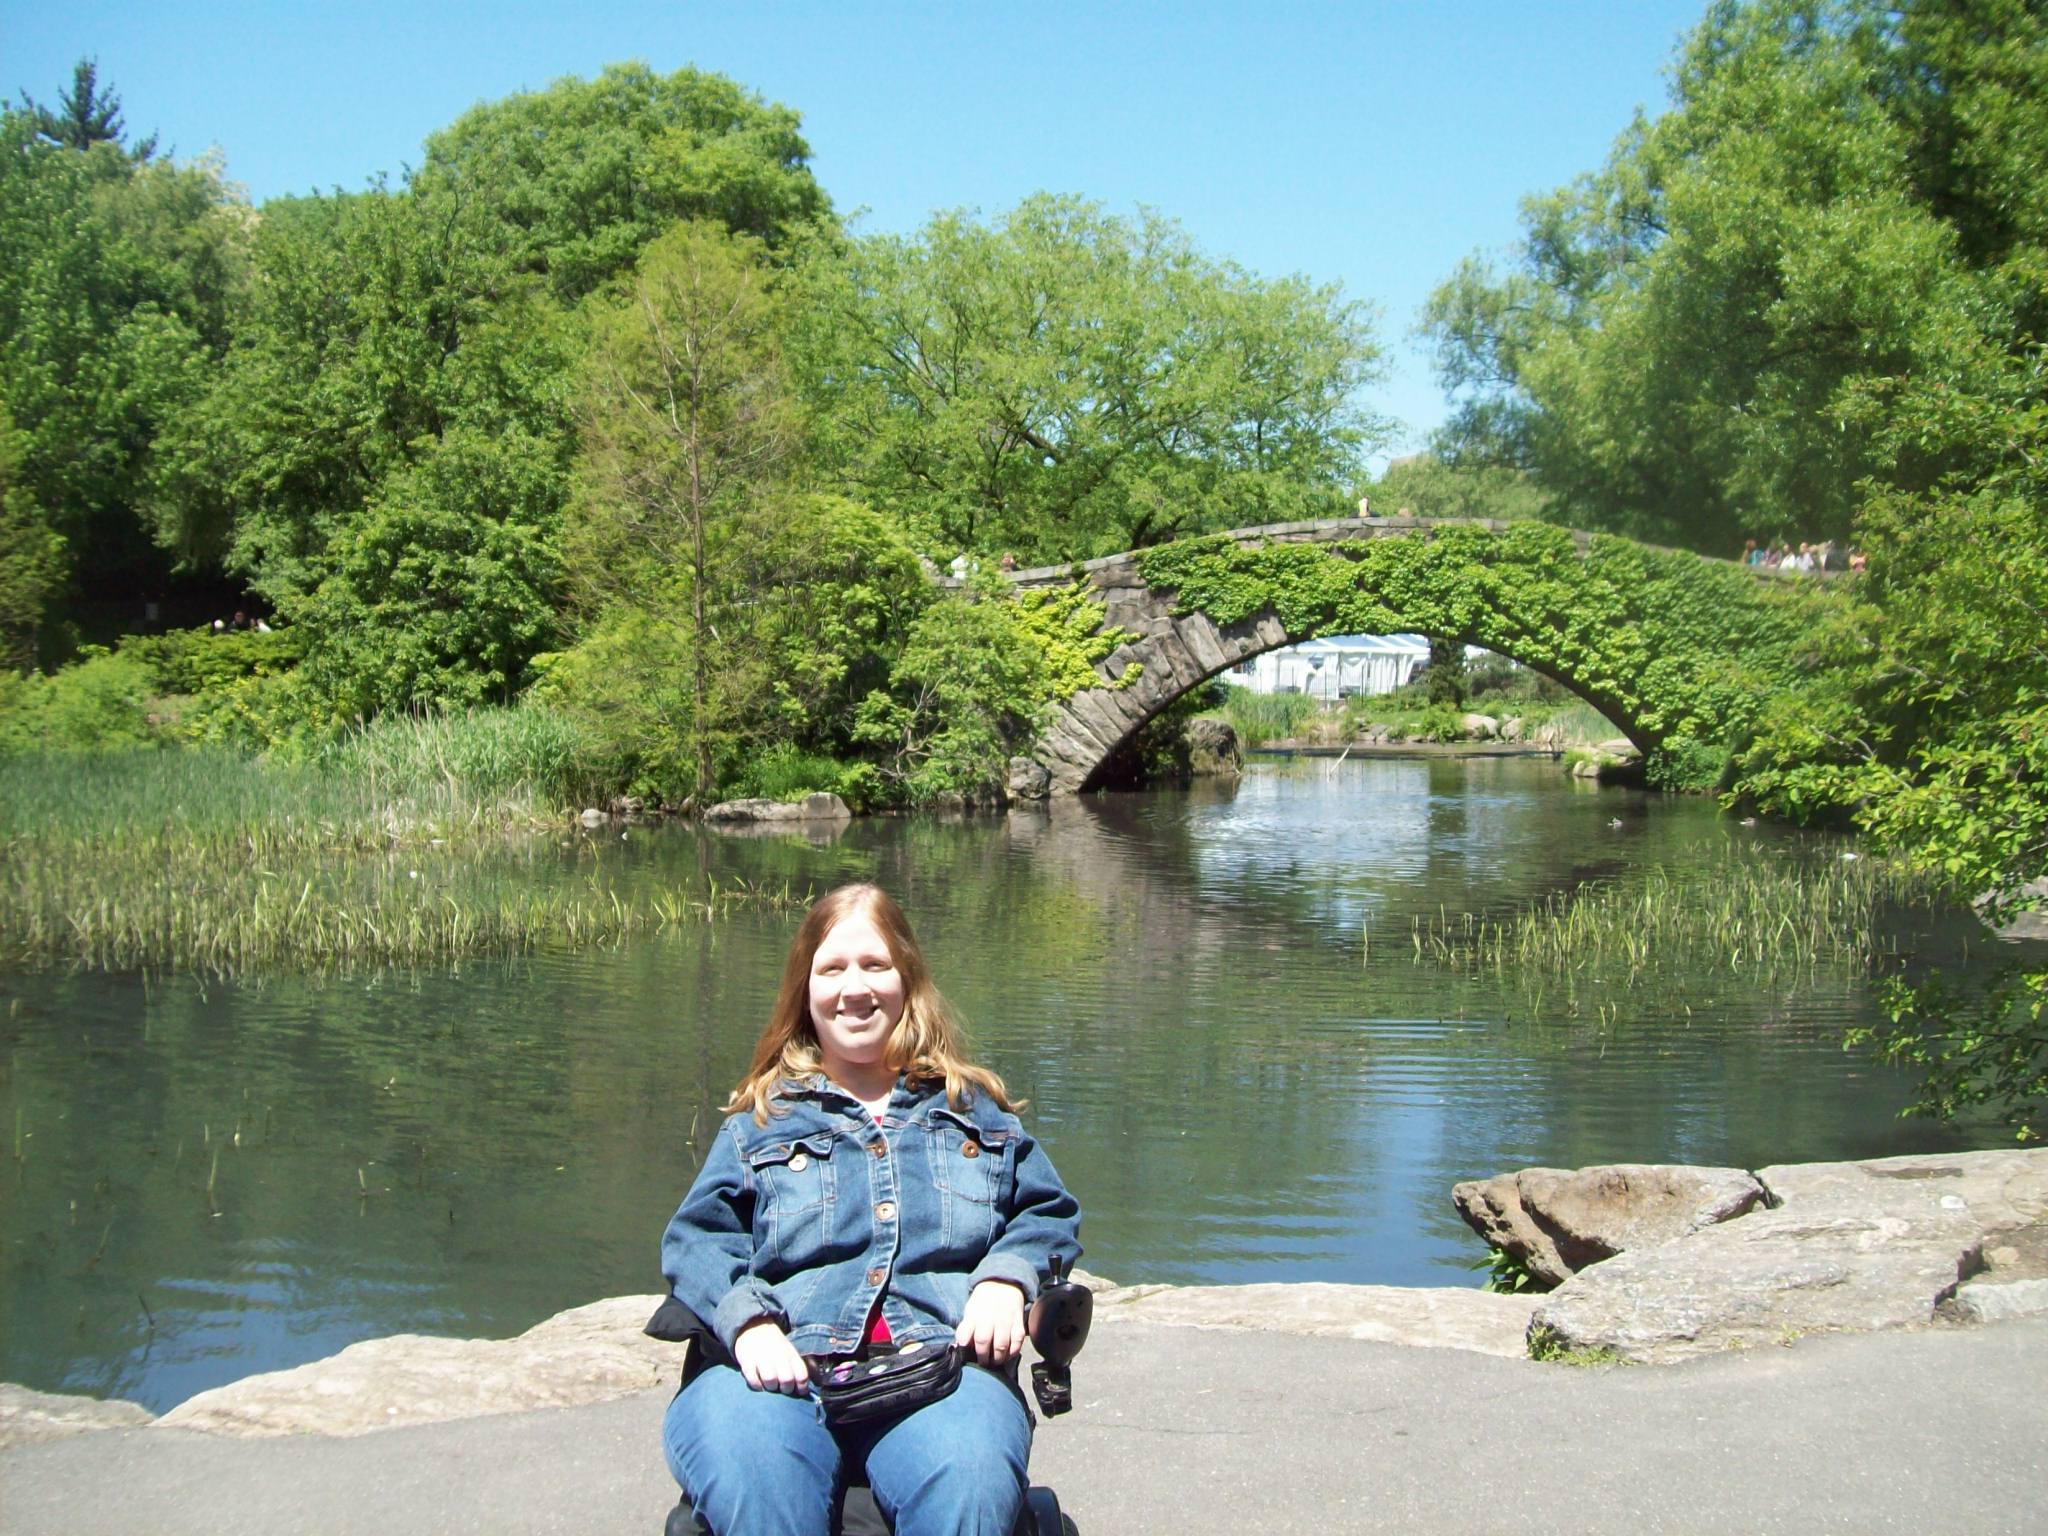 Karin in Central Park, 2010.